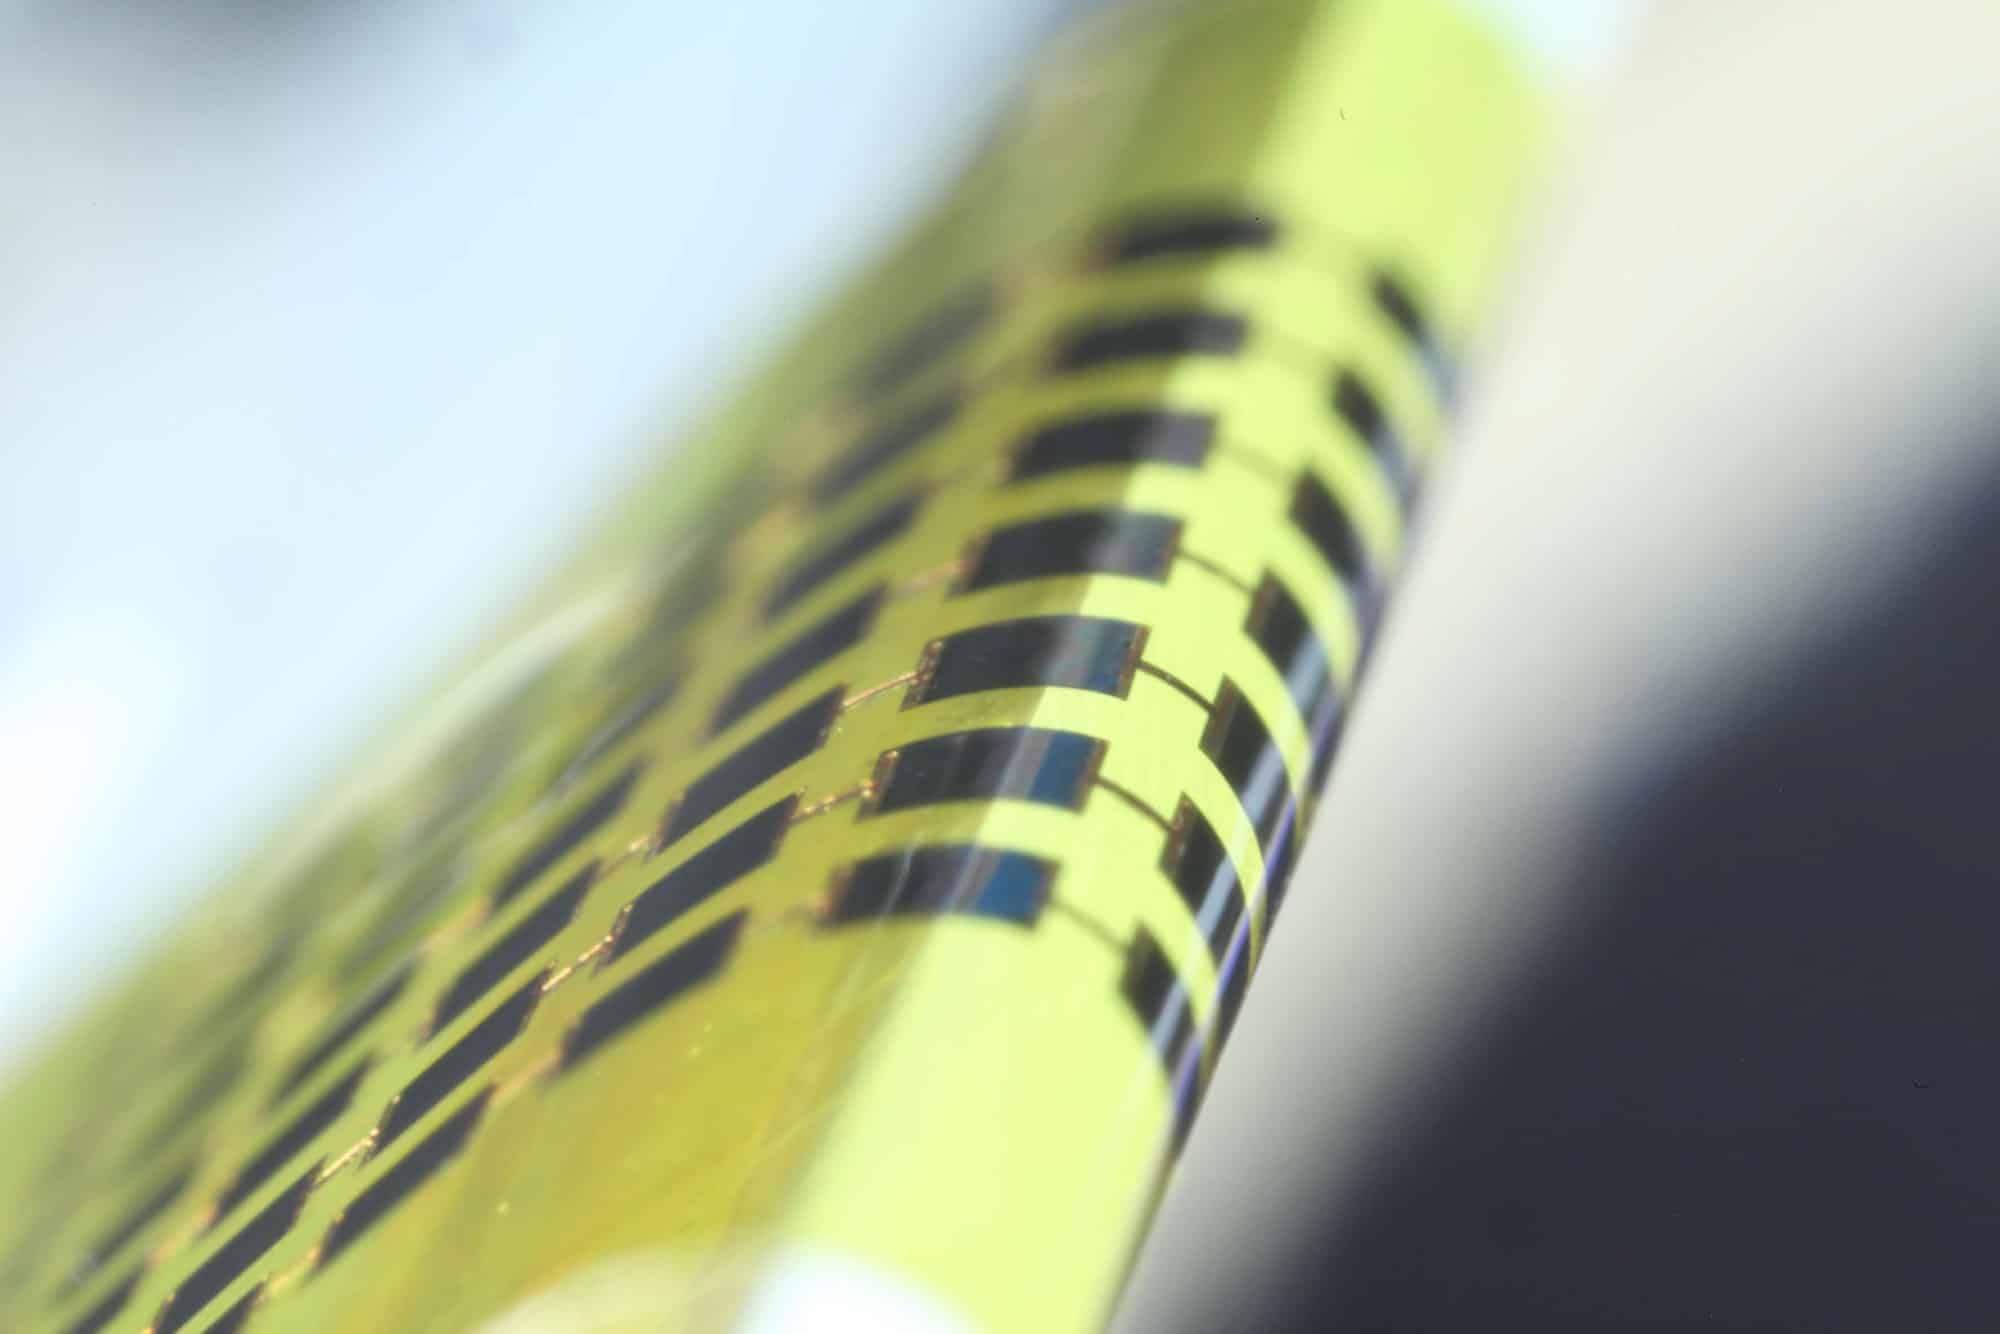 Crean paneles solares tan finos que se enrollan en un lápiz